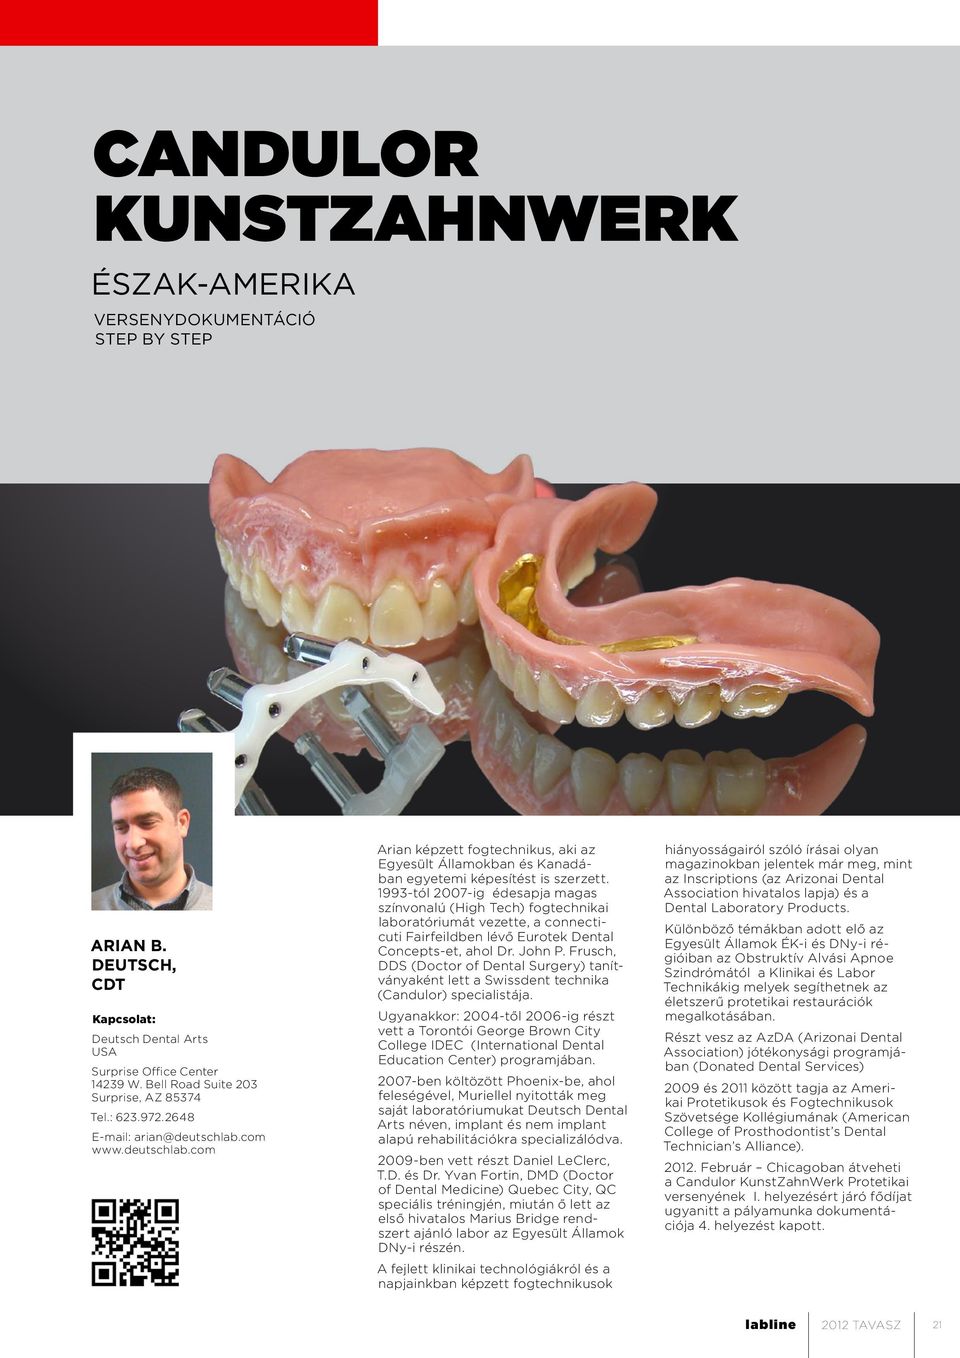 1993-tól 2007-ig édesapja magas színvonalú (High Tech) fogtechnikai laboratóriumát vezette, a connecticuti Fairfeildben lévő Eurotek Dental Concepts-et, ahol Dr. John P.